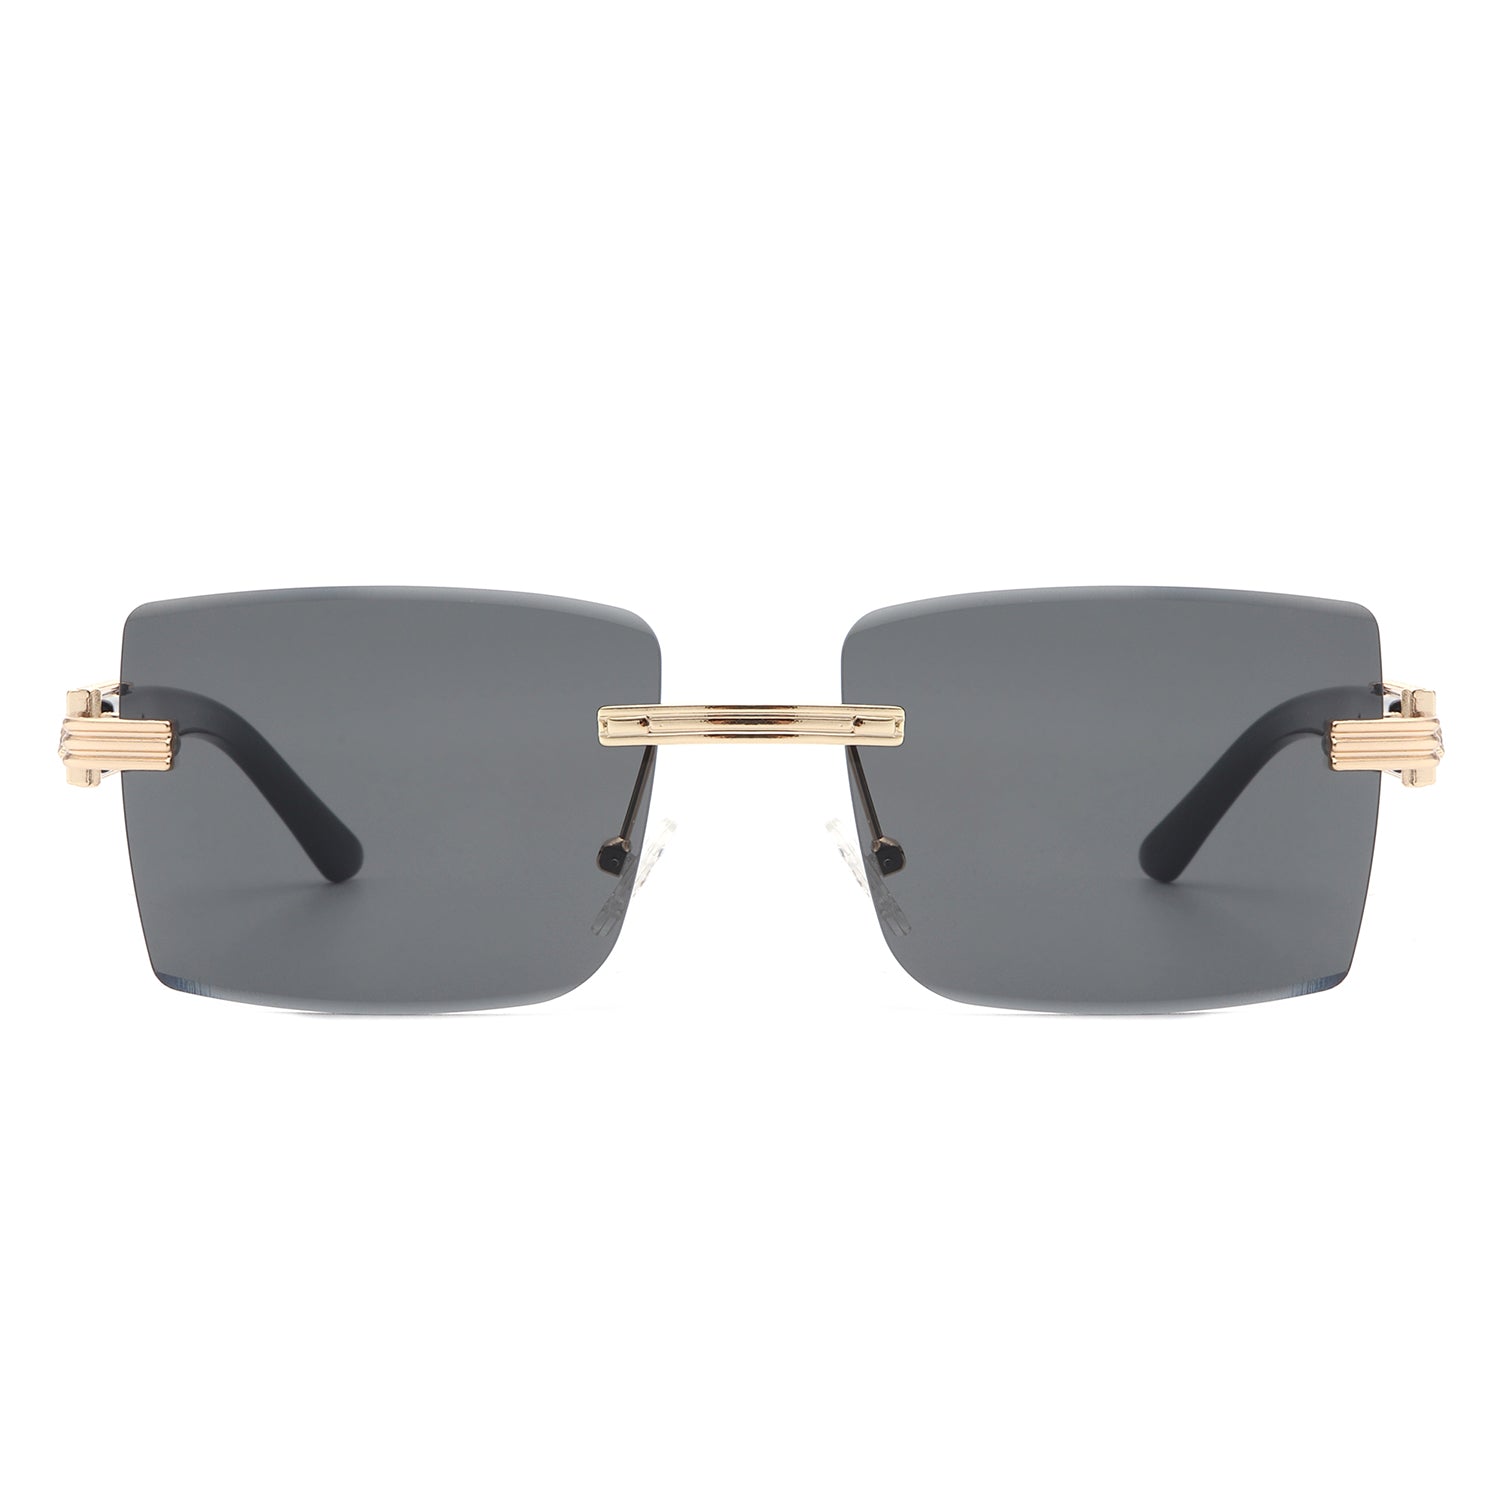 Wholesale Retro Square PC Square Frameless Men's Sunglasses